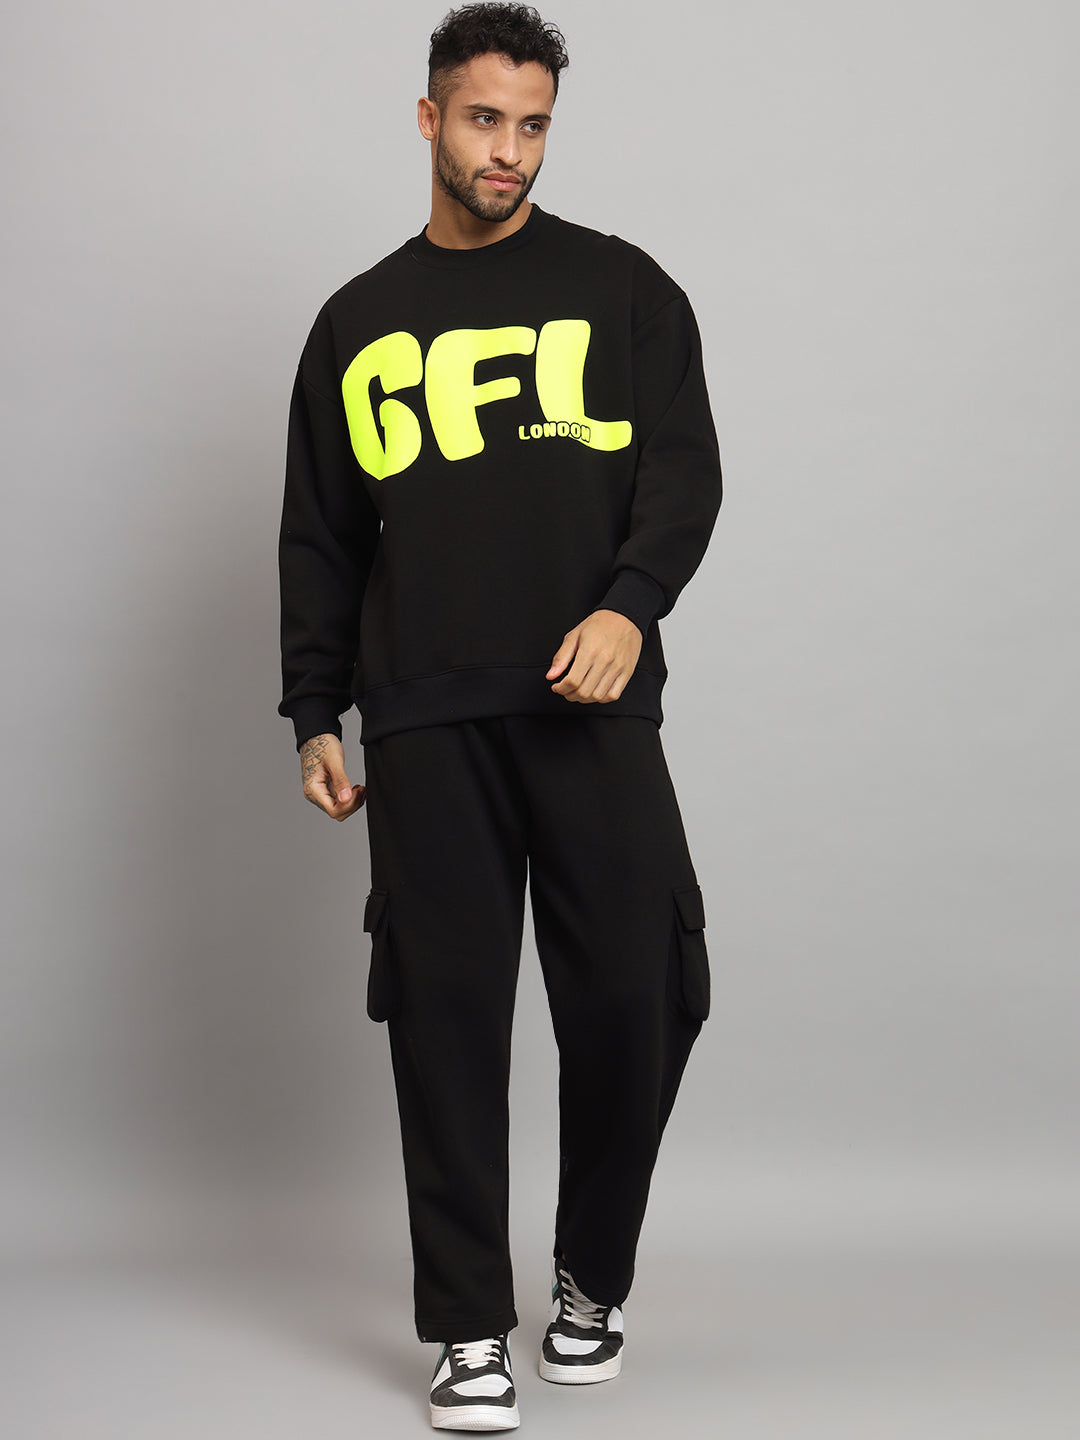 Griffel Men Oversized Fit GFL Print Round Neck 100% Cotton Fleece Black Tracksuit - griffel